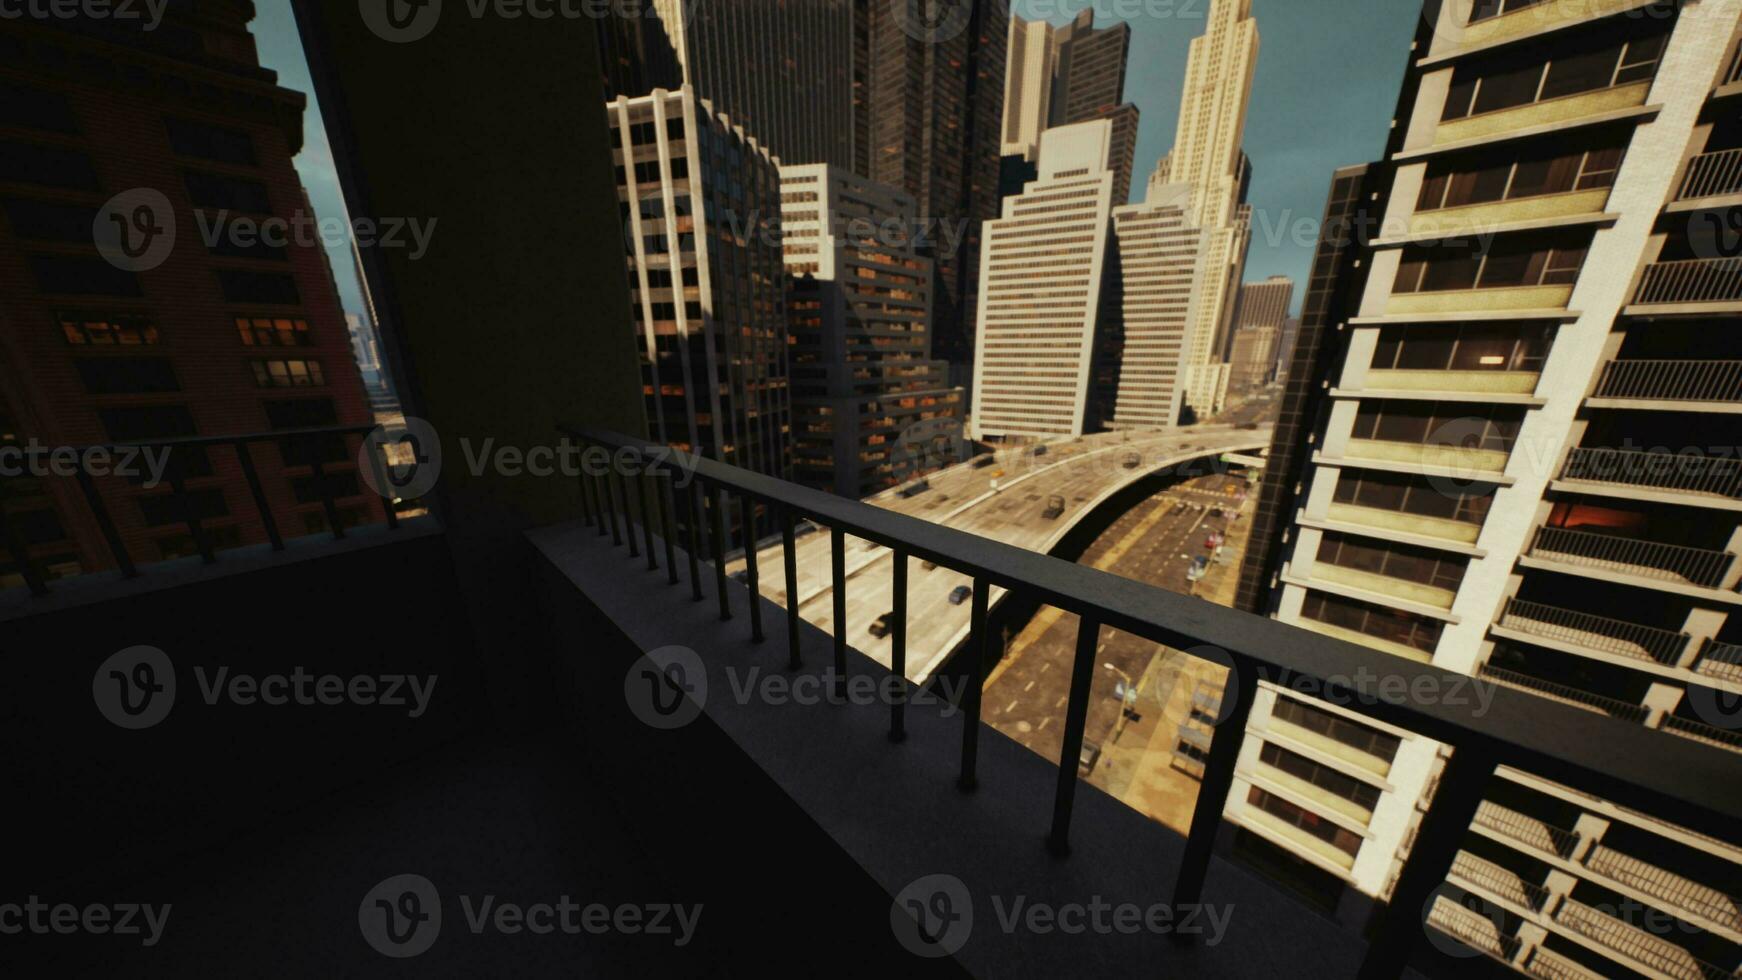 en stadsbild fångad från en balkong utsikt de livliga gator Nedan foto